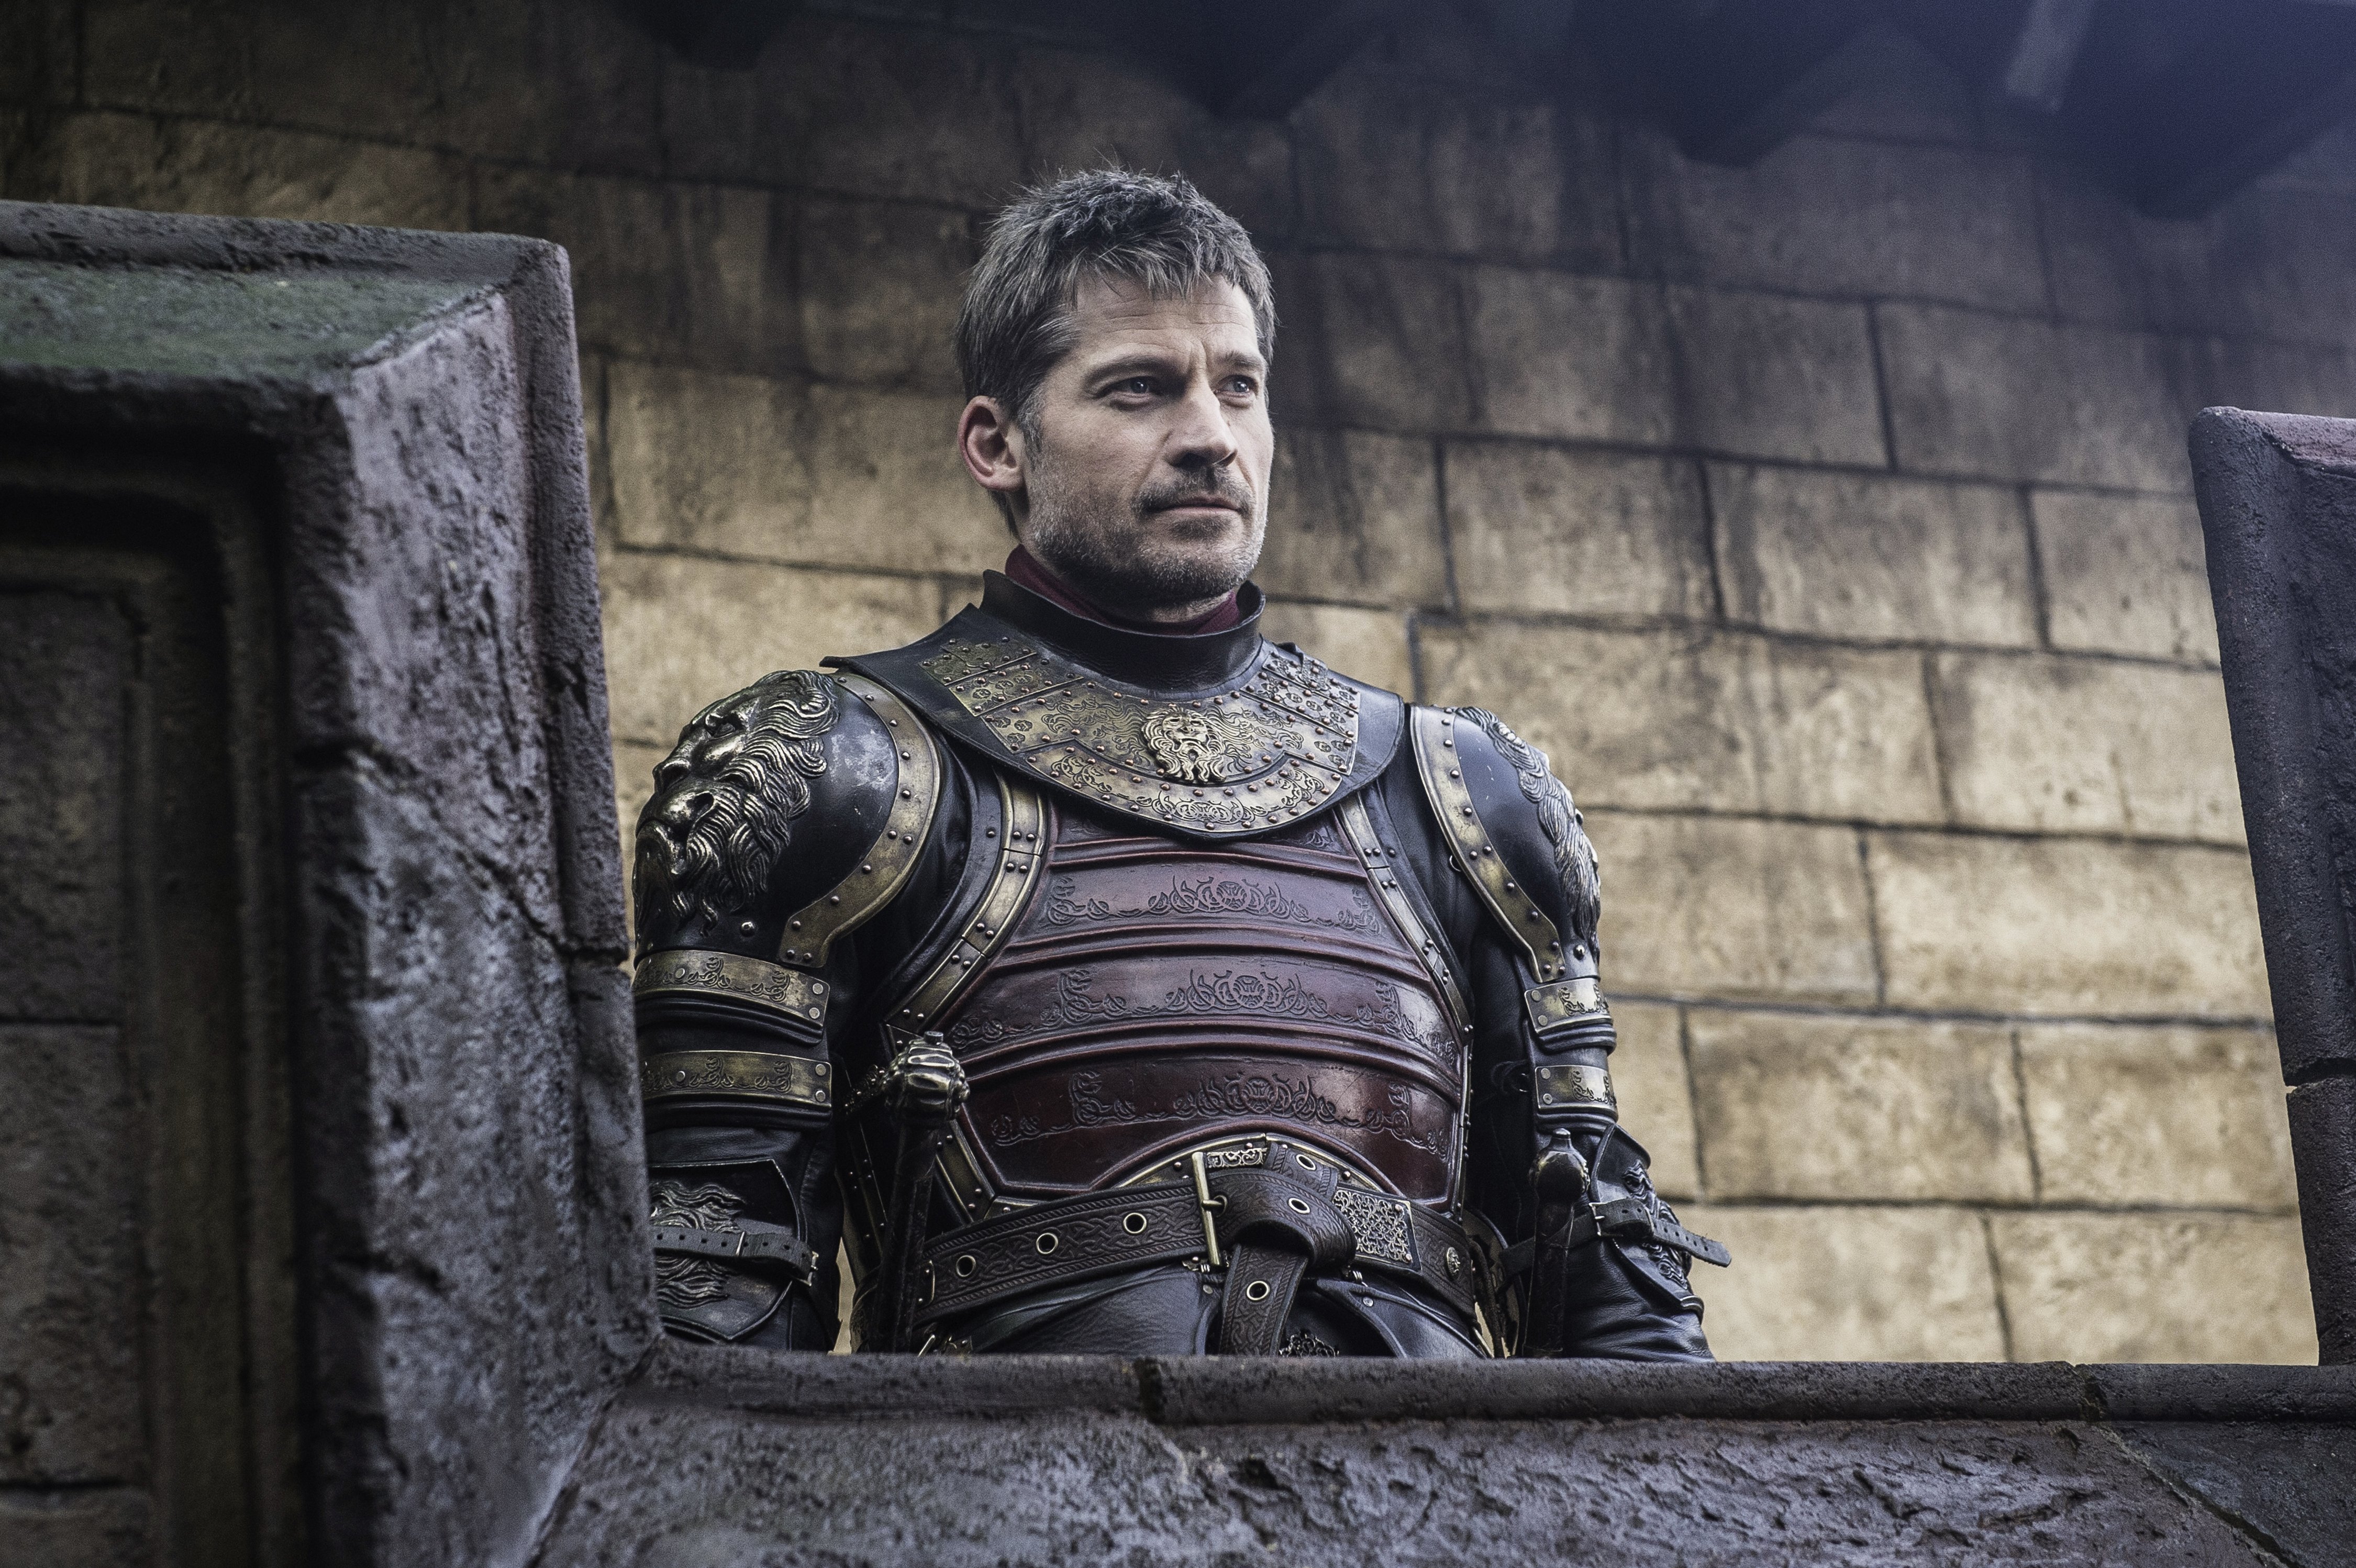 Jaime was part of the Kingsguard before he murdered the Targaryen King. 